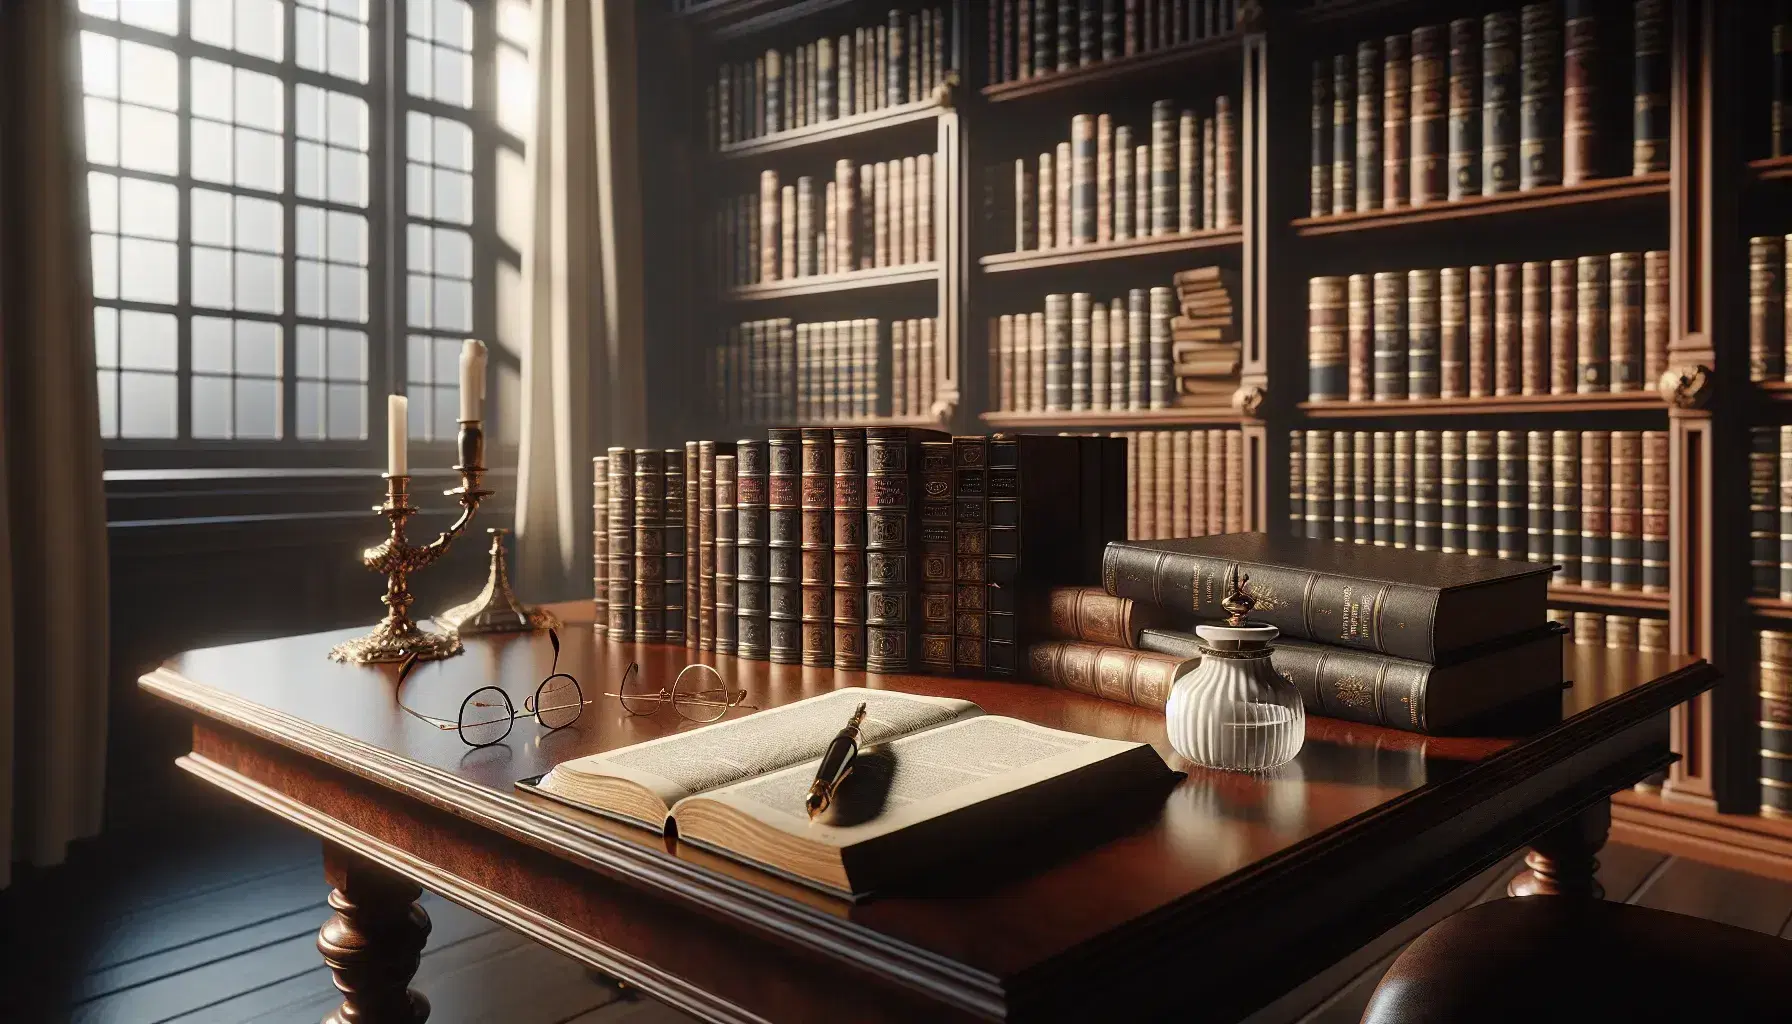 Biblioteca clásica con estanterías de madera oscura llenas de libros, mesa antigua con diccionario abierto, gafas y tintero con pluma.